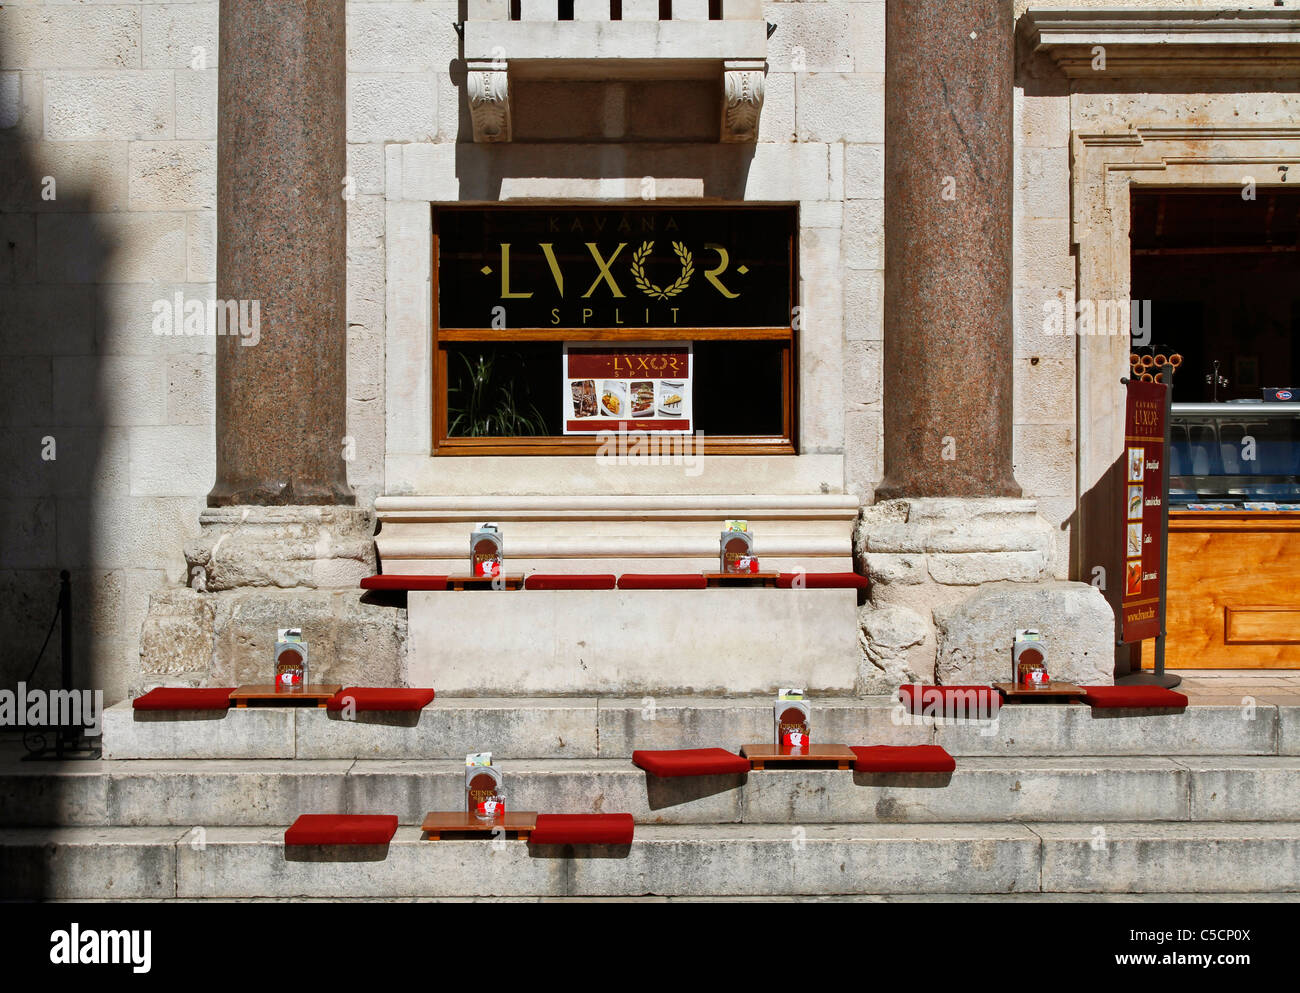 Cafe Luxor, Peristyle, Split, Croatia Stock Photo